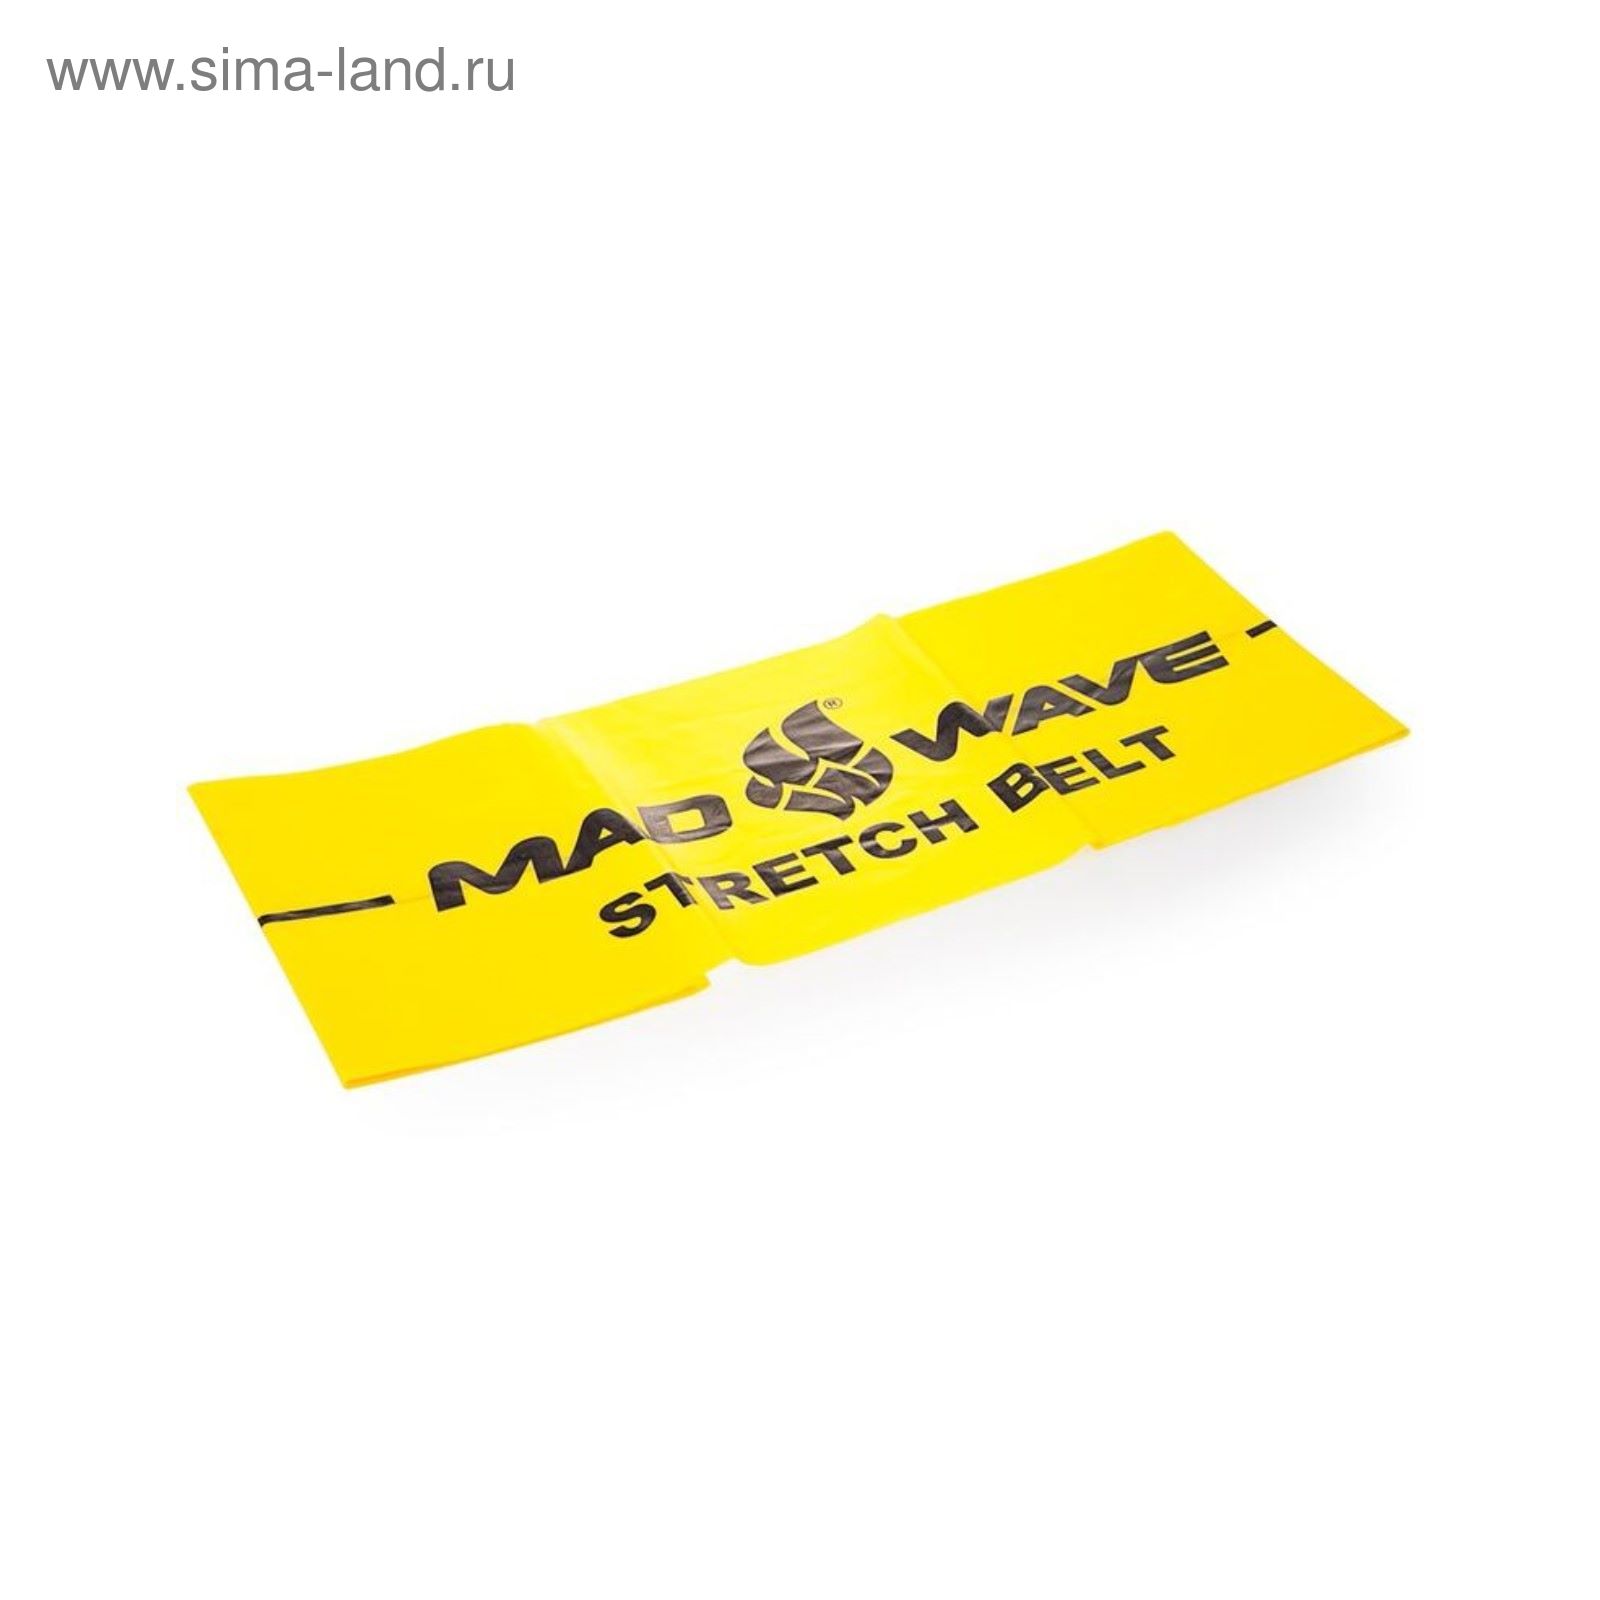 Эспандер Stretch Band, 1500*150*0.2 мм, Yellow M0771 11 3 06W